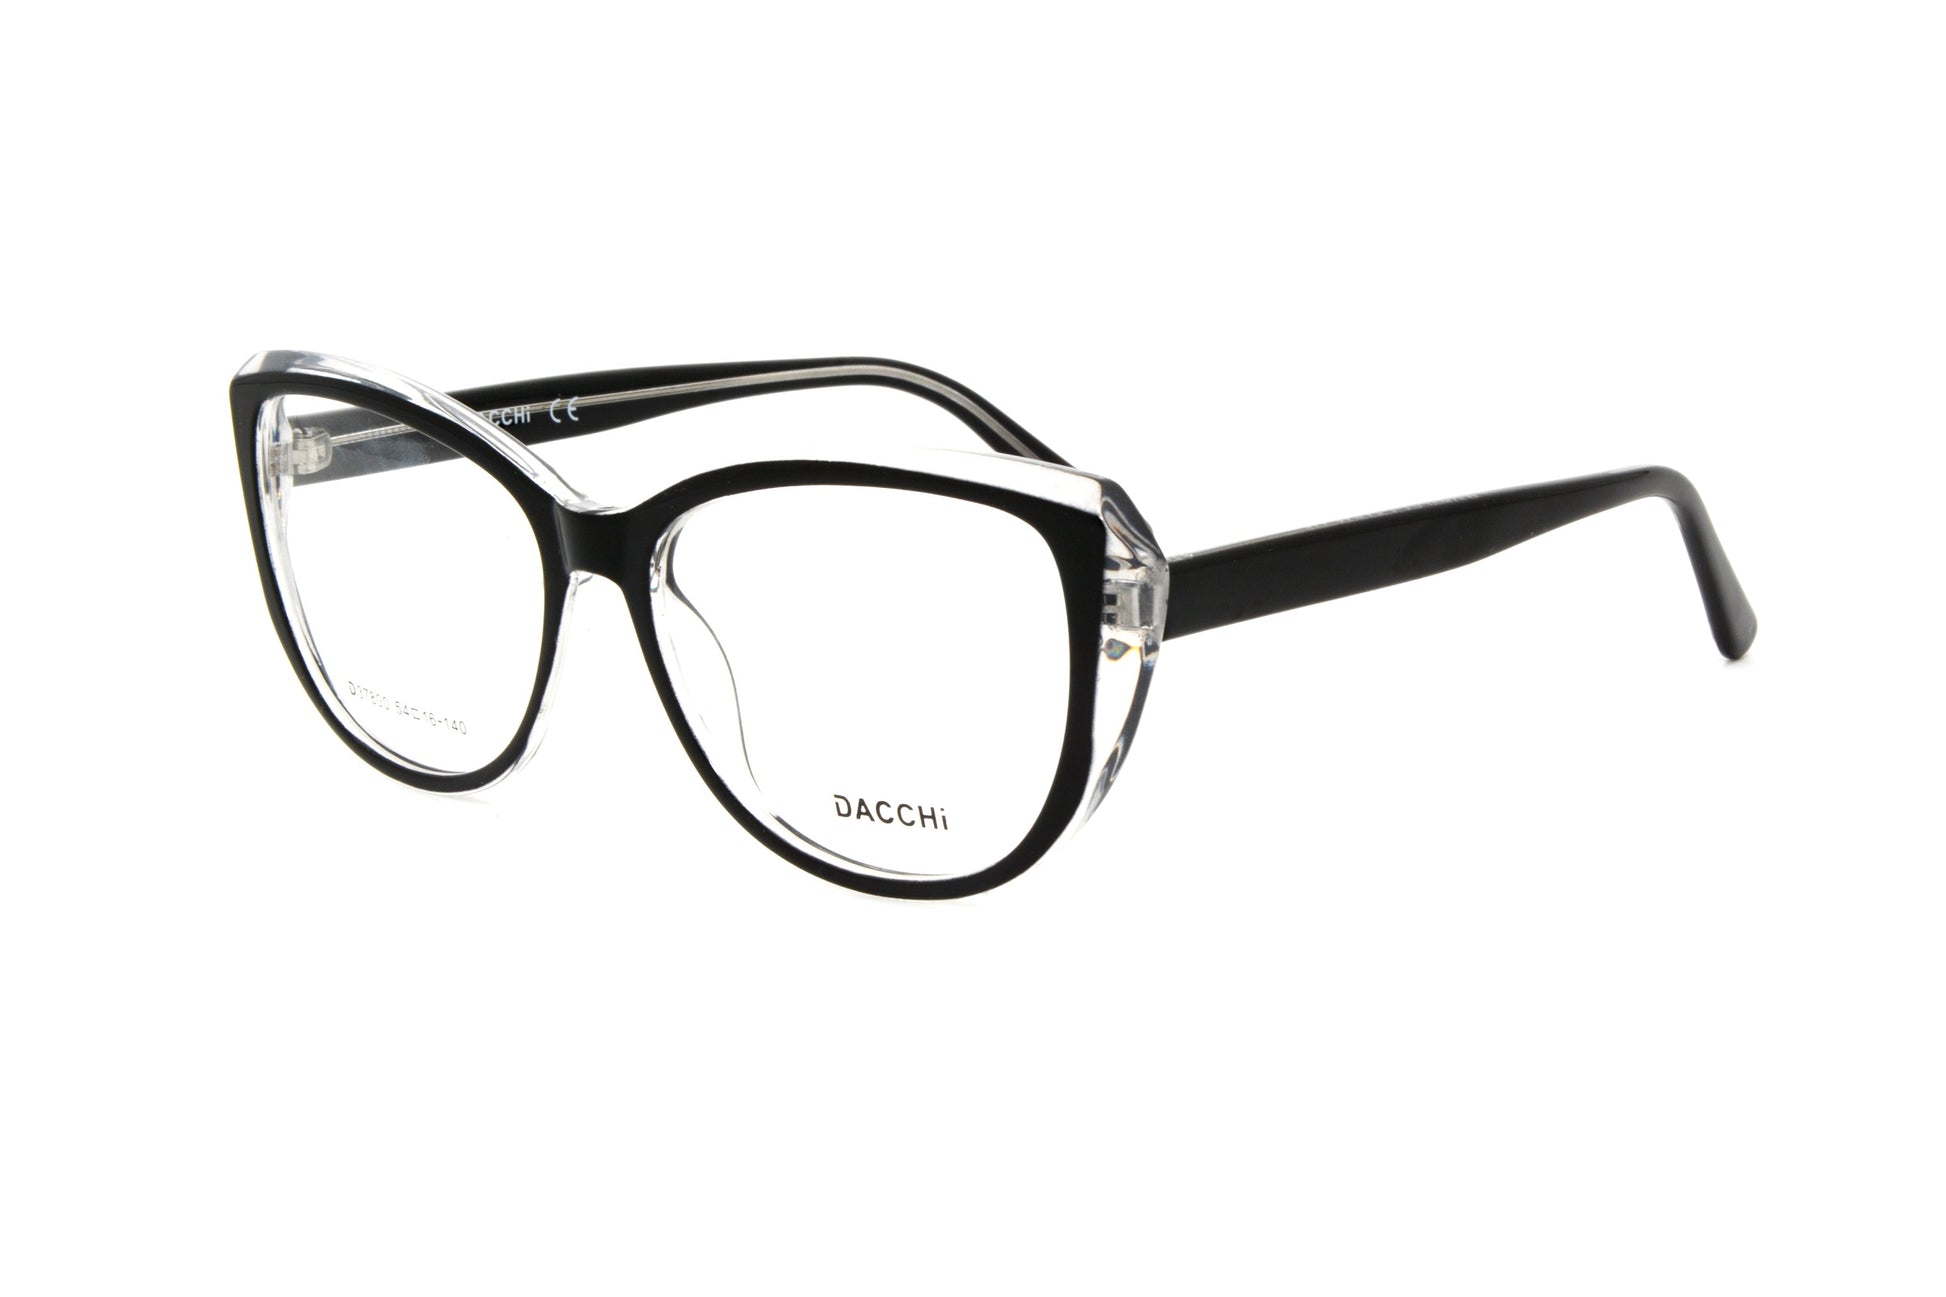 Dacchi eyewear D37800 C1-1